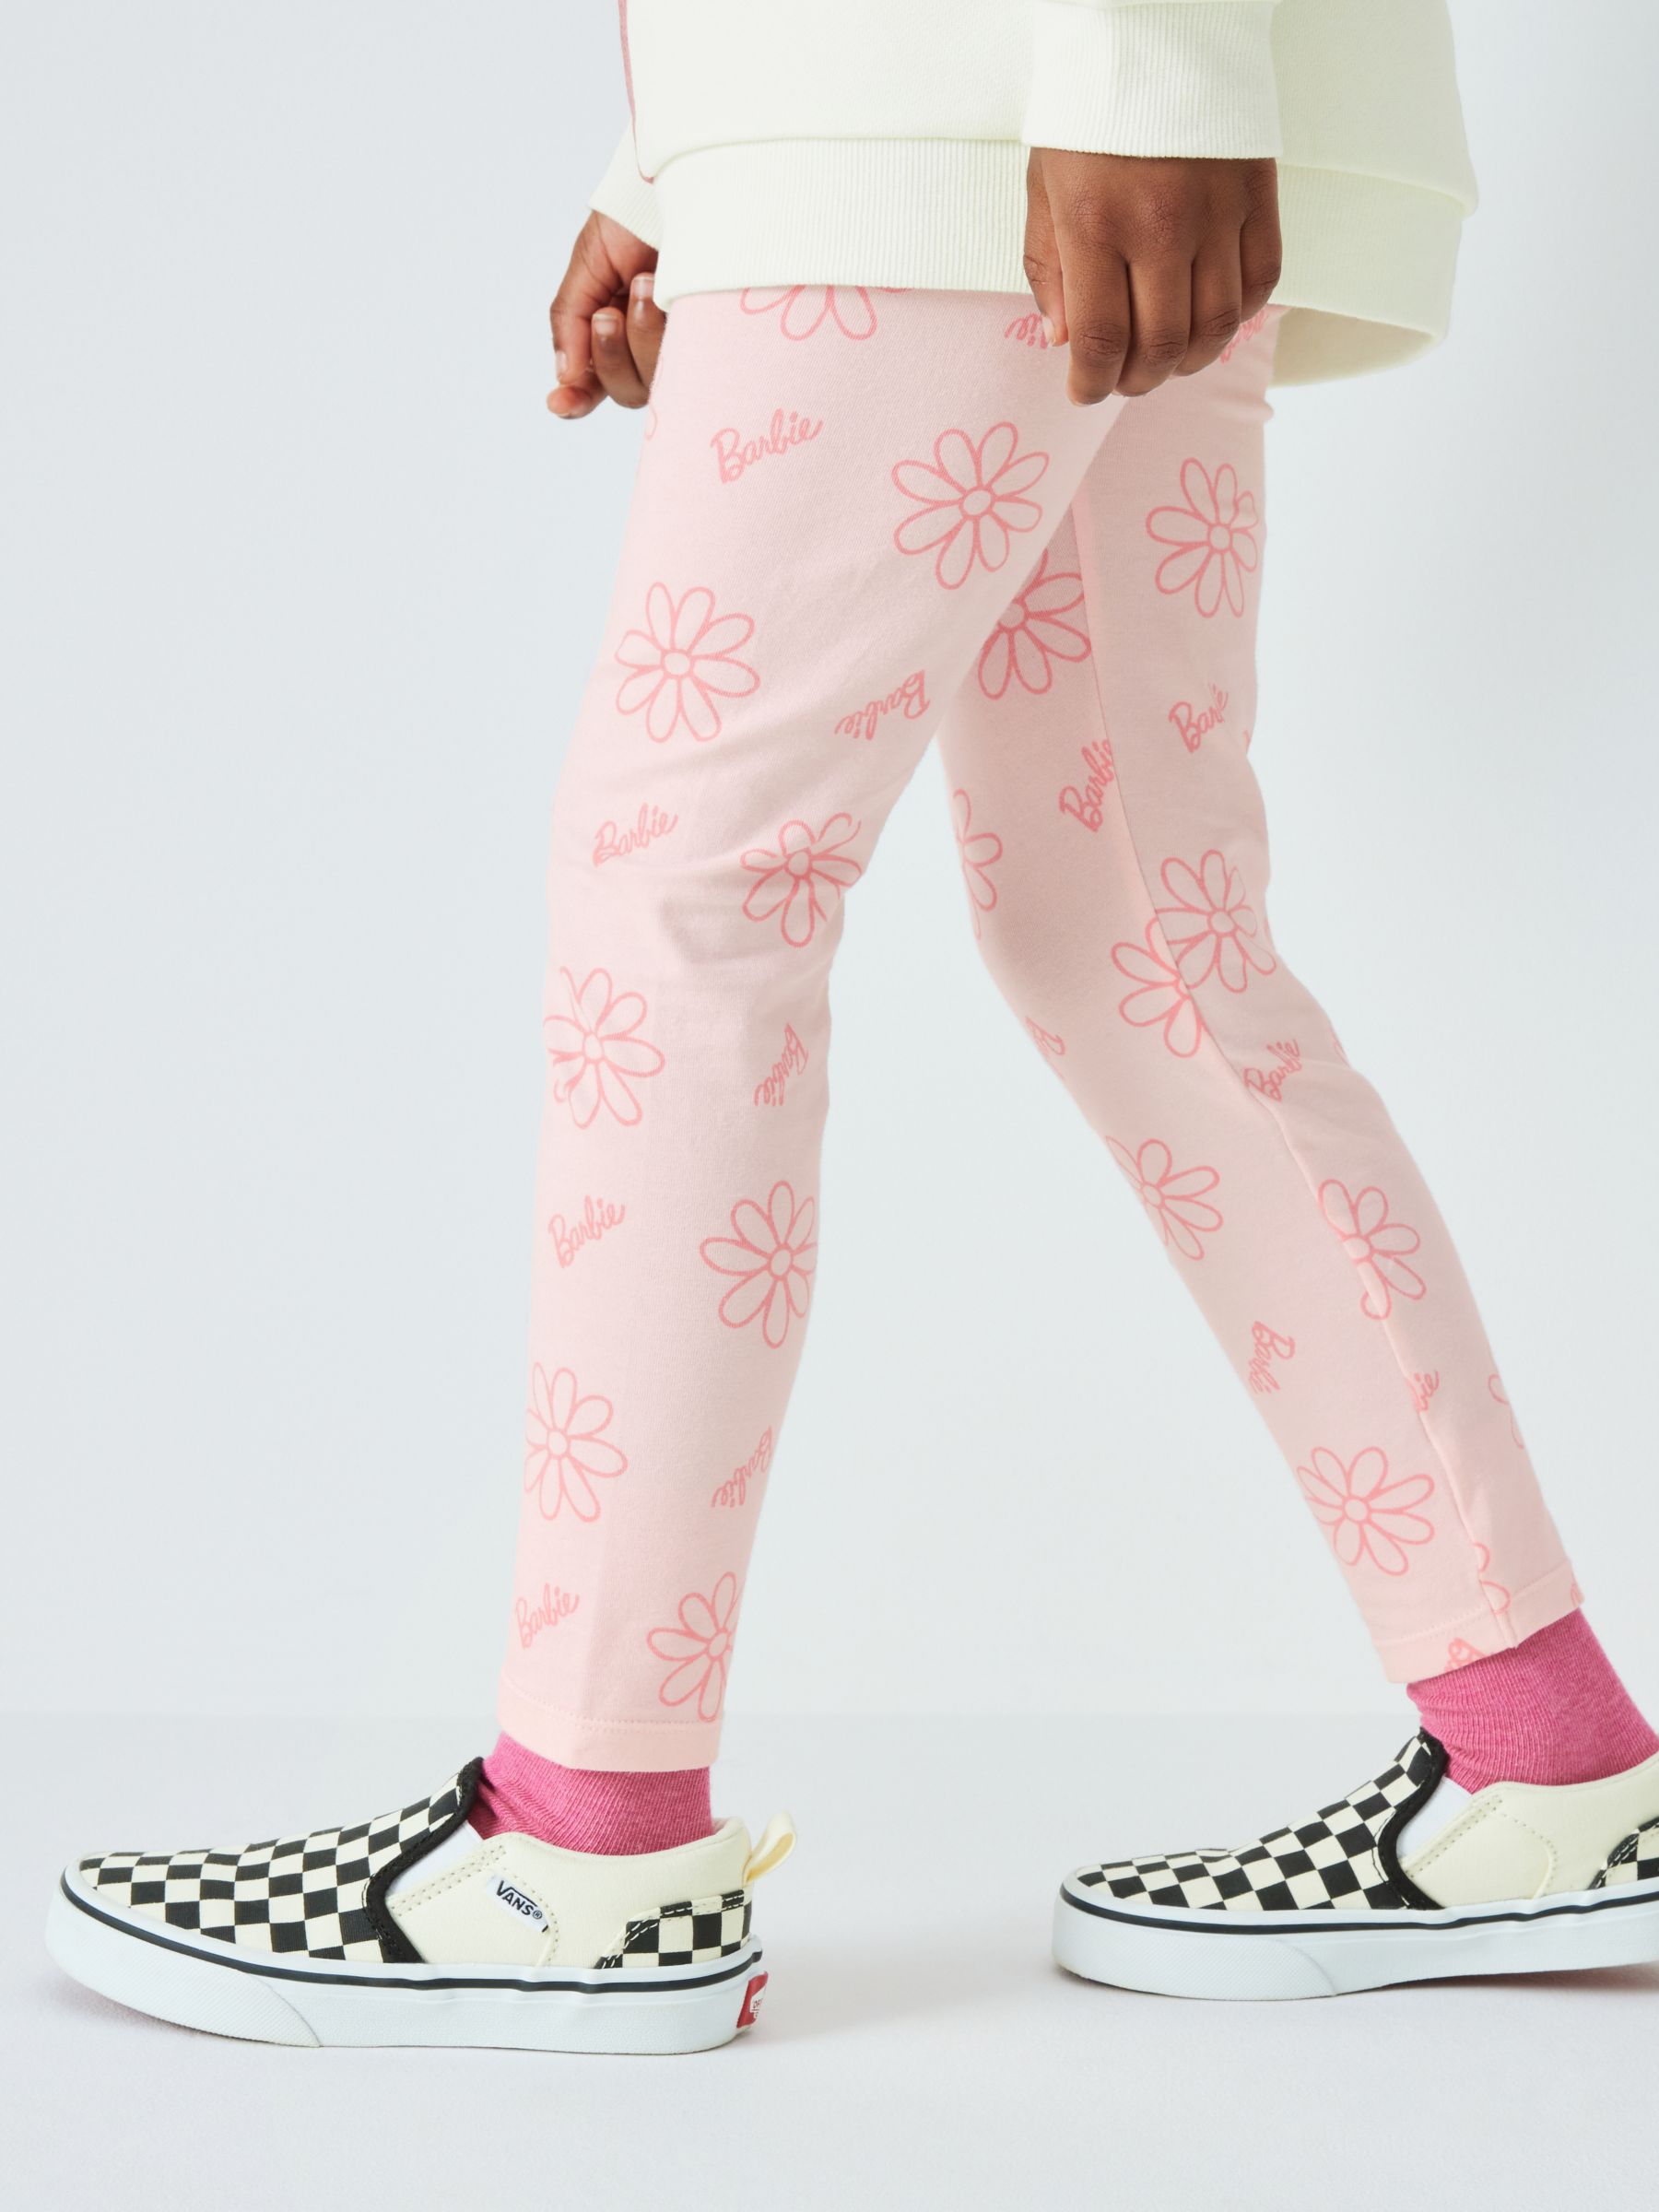 Brand Threads Kids' Barbie Sweatshirt and Leggings Set, Pale Pink, 4-5 years